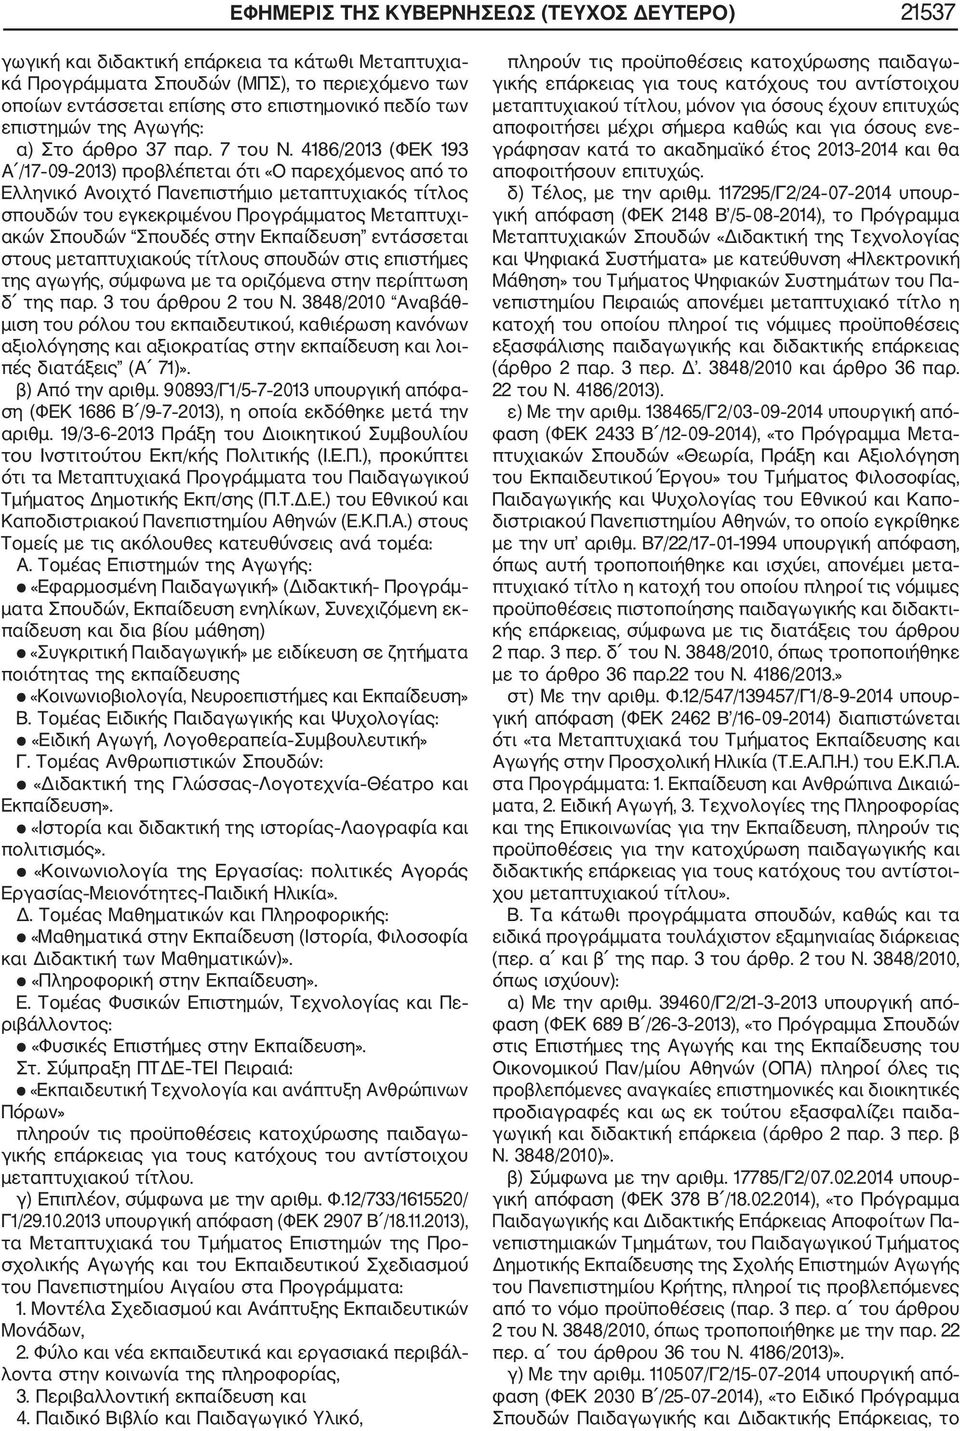 4186/2013 (ΦΕΚ 193 Α /17 09 2013) προβλέπεται ότι «Ο παρεχόμενος από το Ελληνικό Ανοιχτό Πανεπιστήμιο μεταπτυχιακός τίτλος σπουδών του εγκεκριμένου Προγράμματος Μεταπτυχι ακών Σπουδών Σπουδές στην